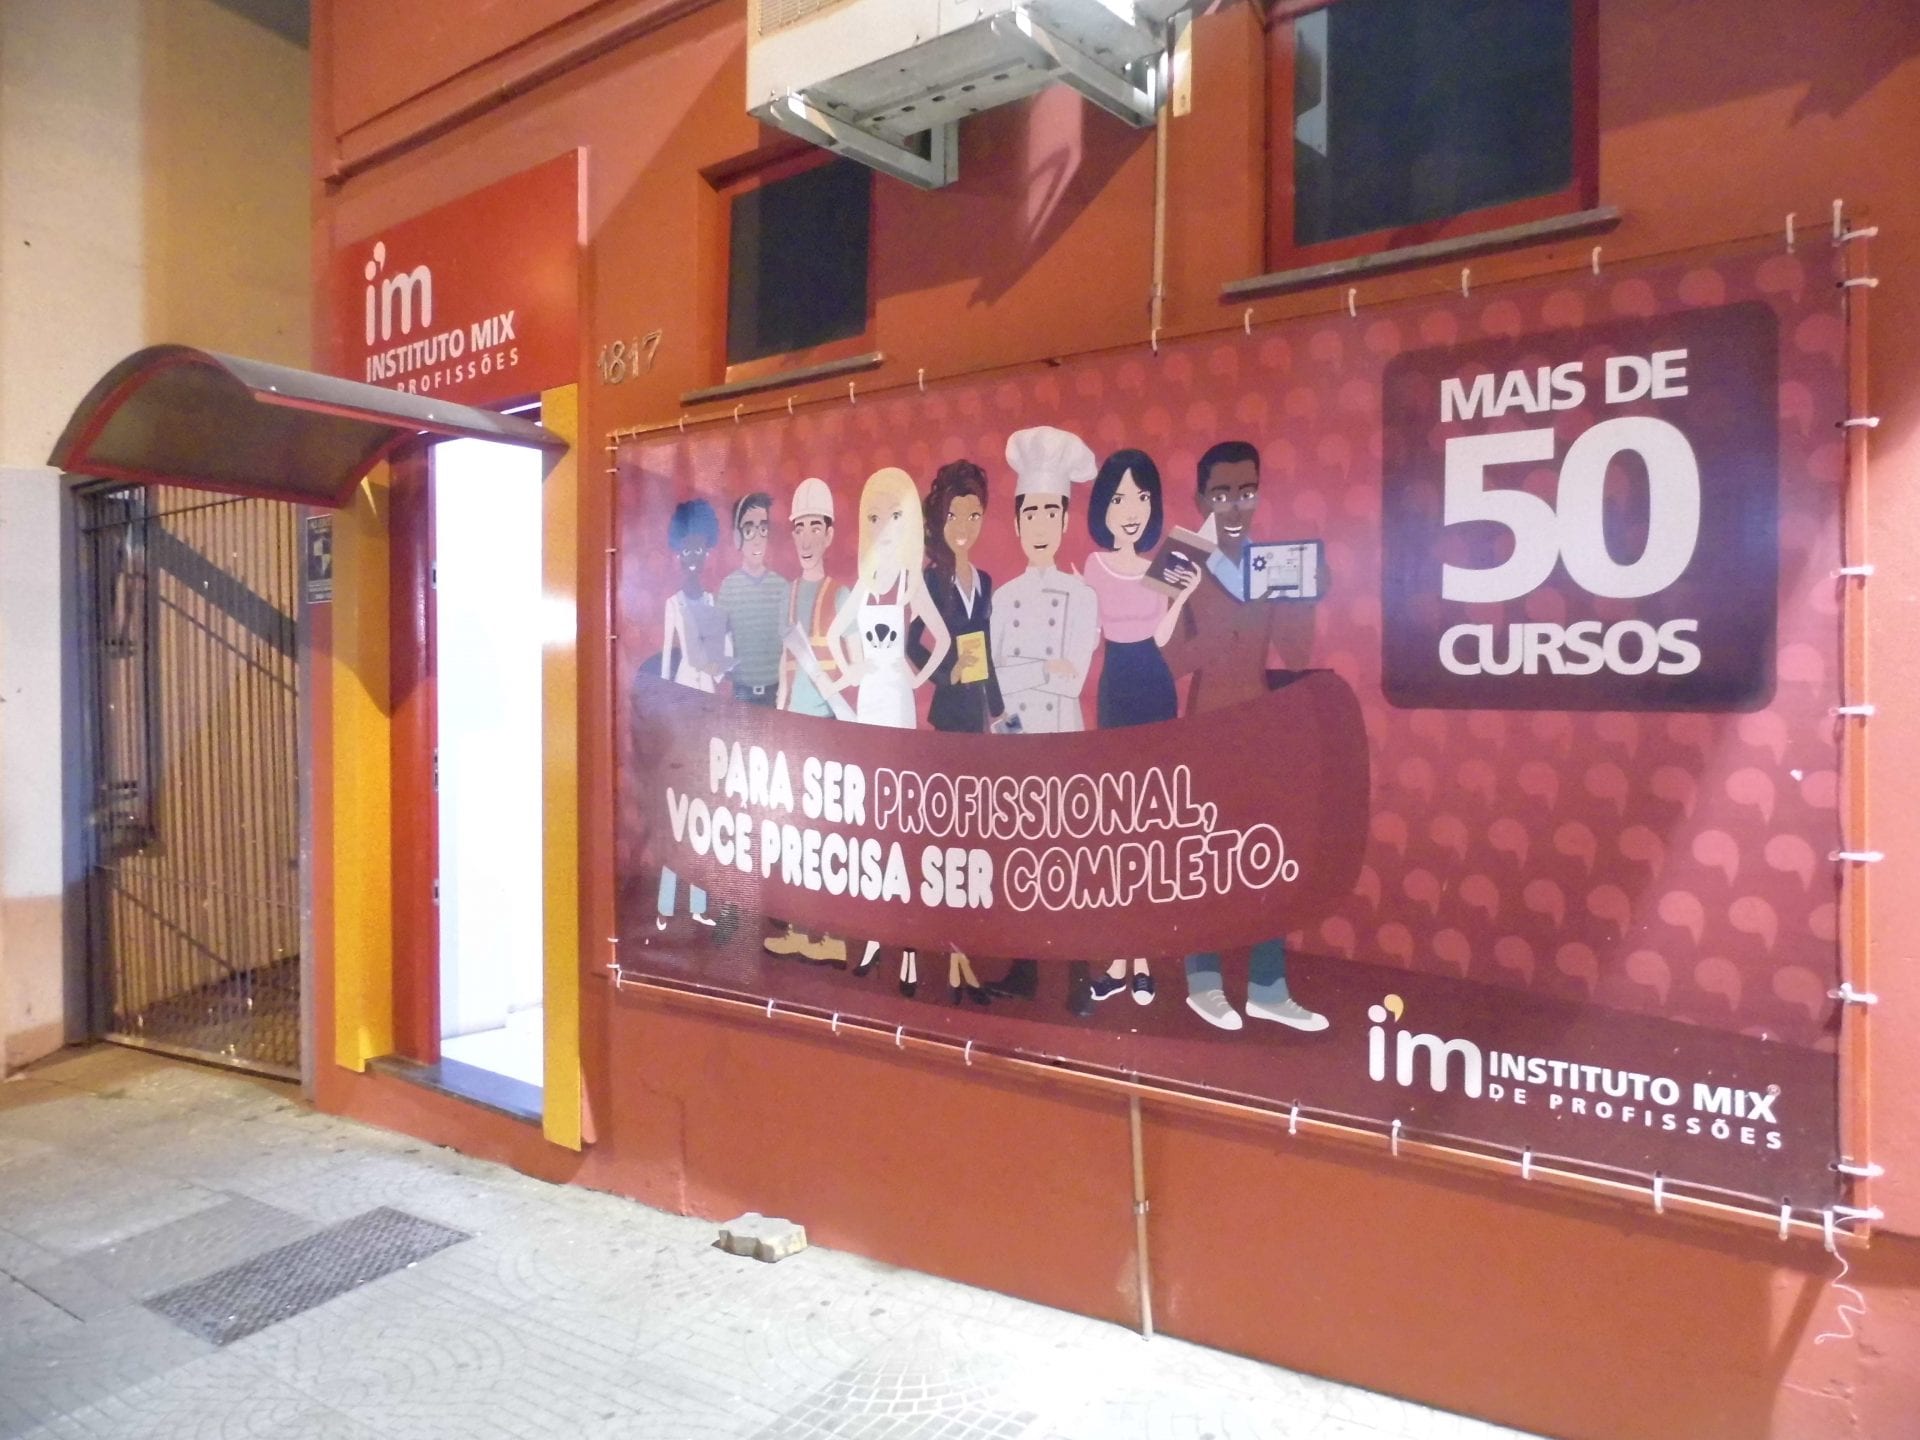 Instituto Mix sorteia 11 bolsas nos primeiro dia do Feirão, confira os premiados